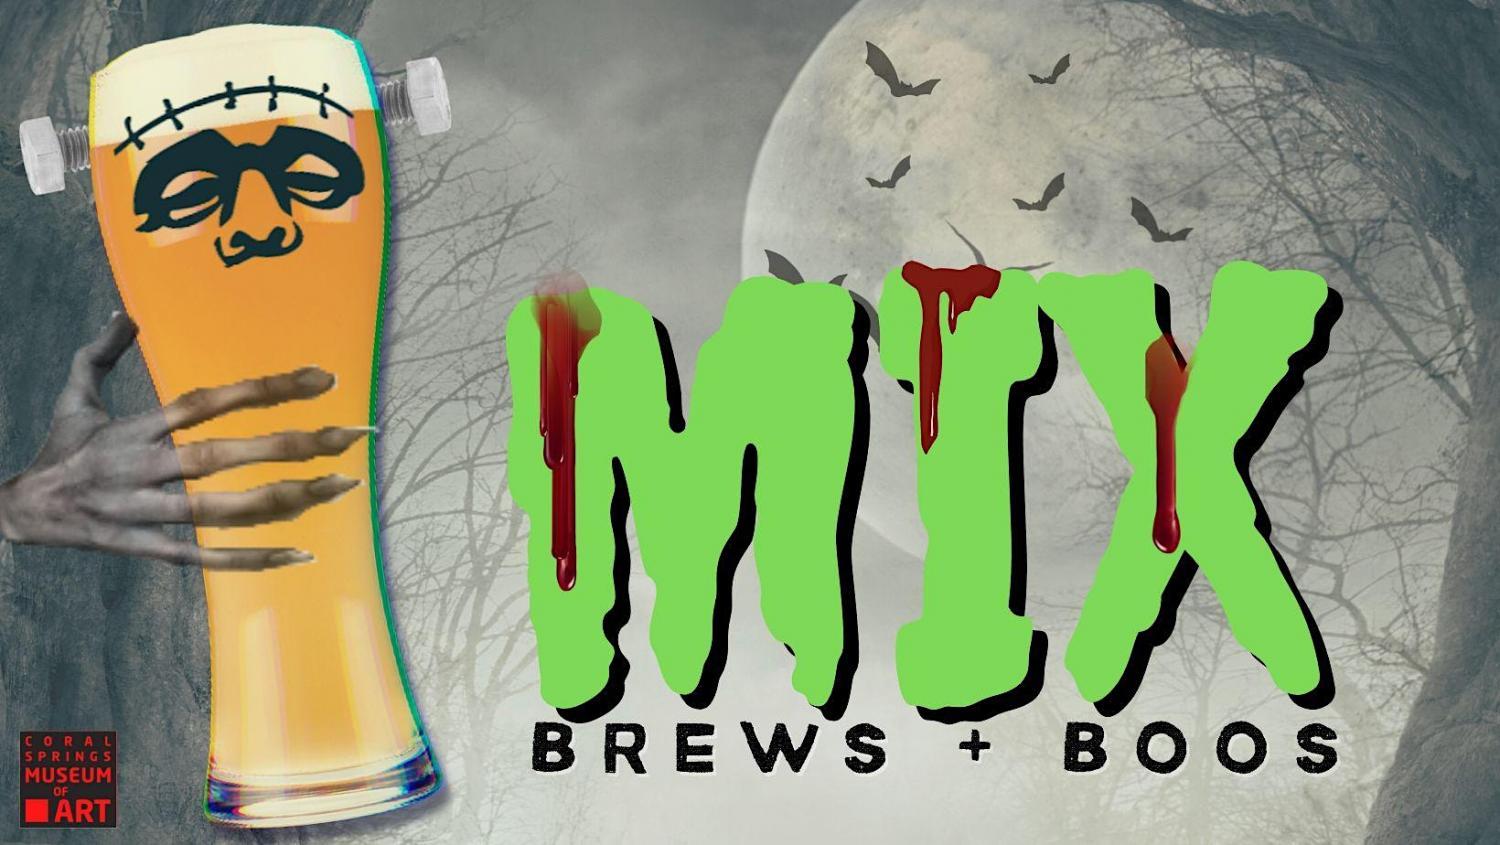 MIX: Brew + Boos and Movies Too!
Fri Oct 21, 7:00 PM - Fri Oct 21, 7:00 PM